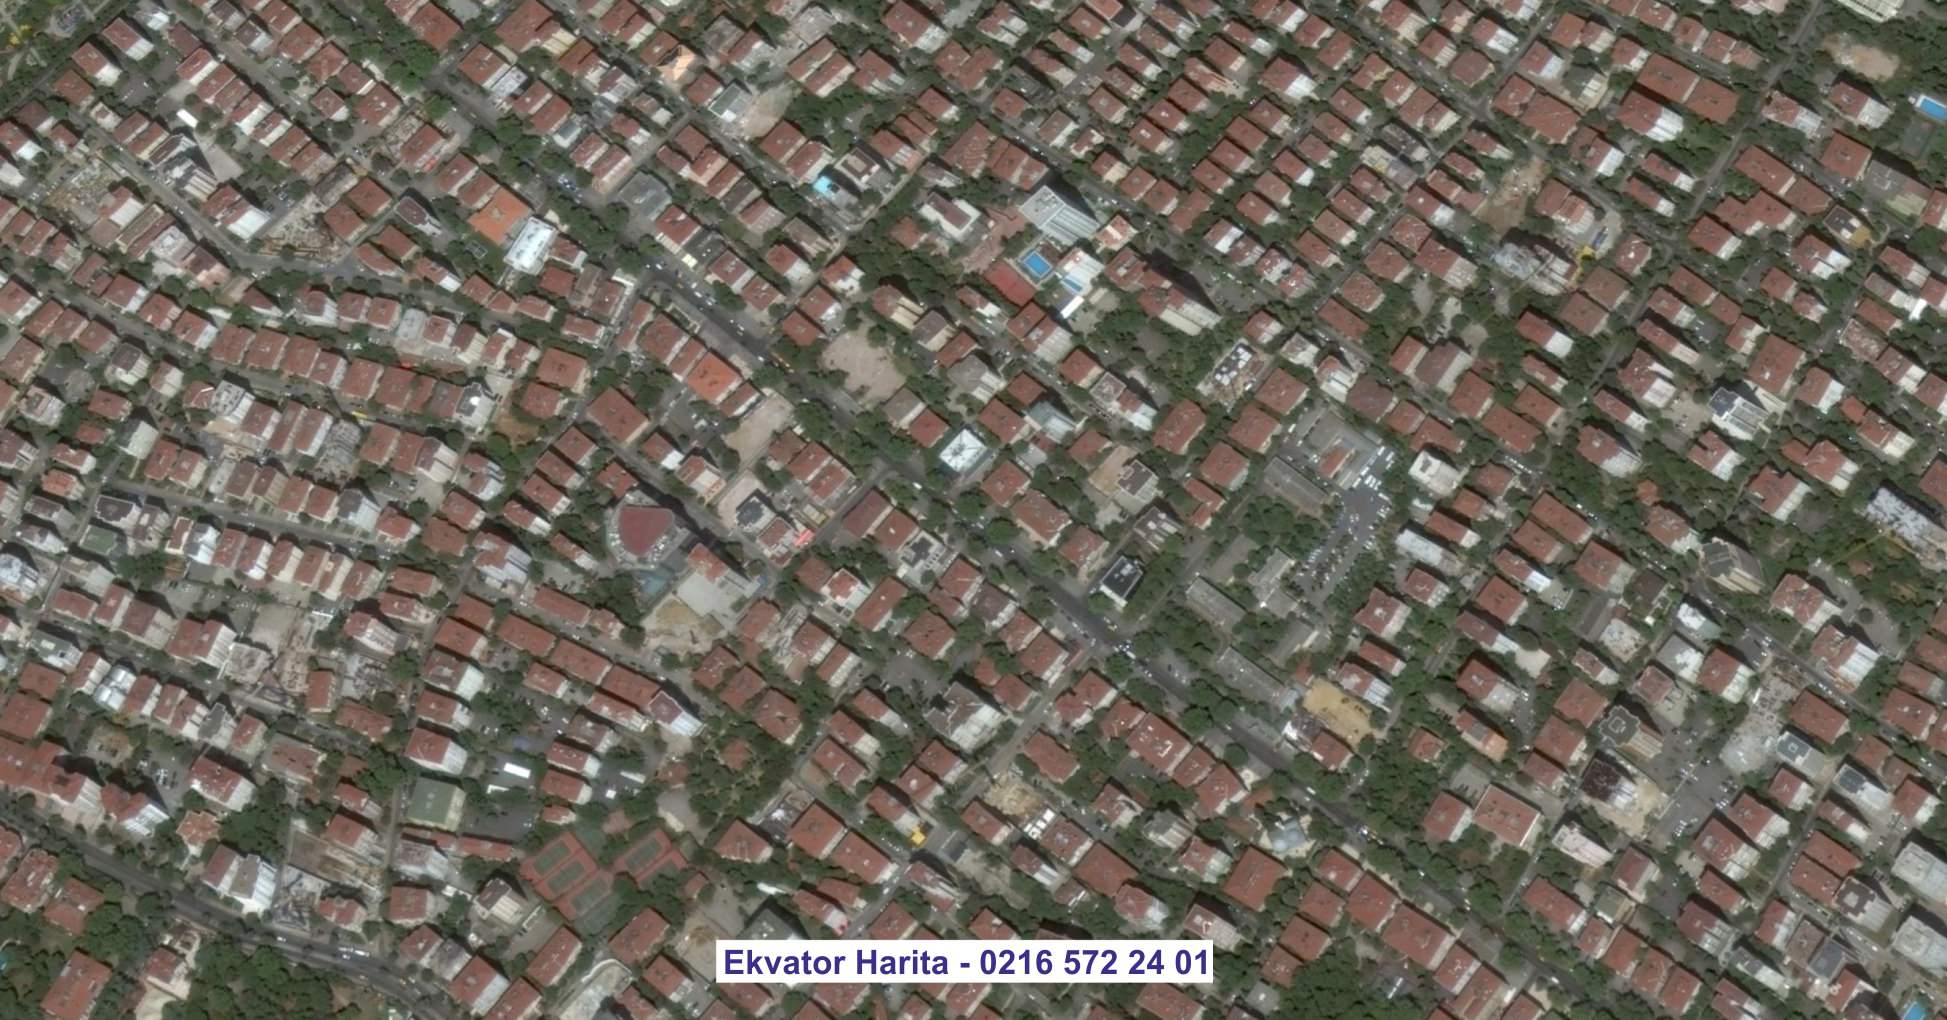 Gaziemir Uydu Görüntüsü Örnek Fotoğrafı